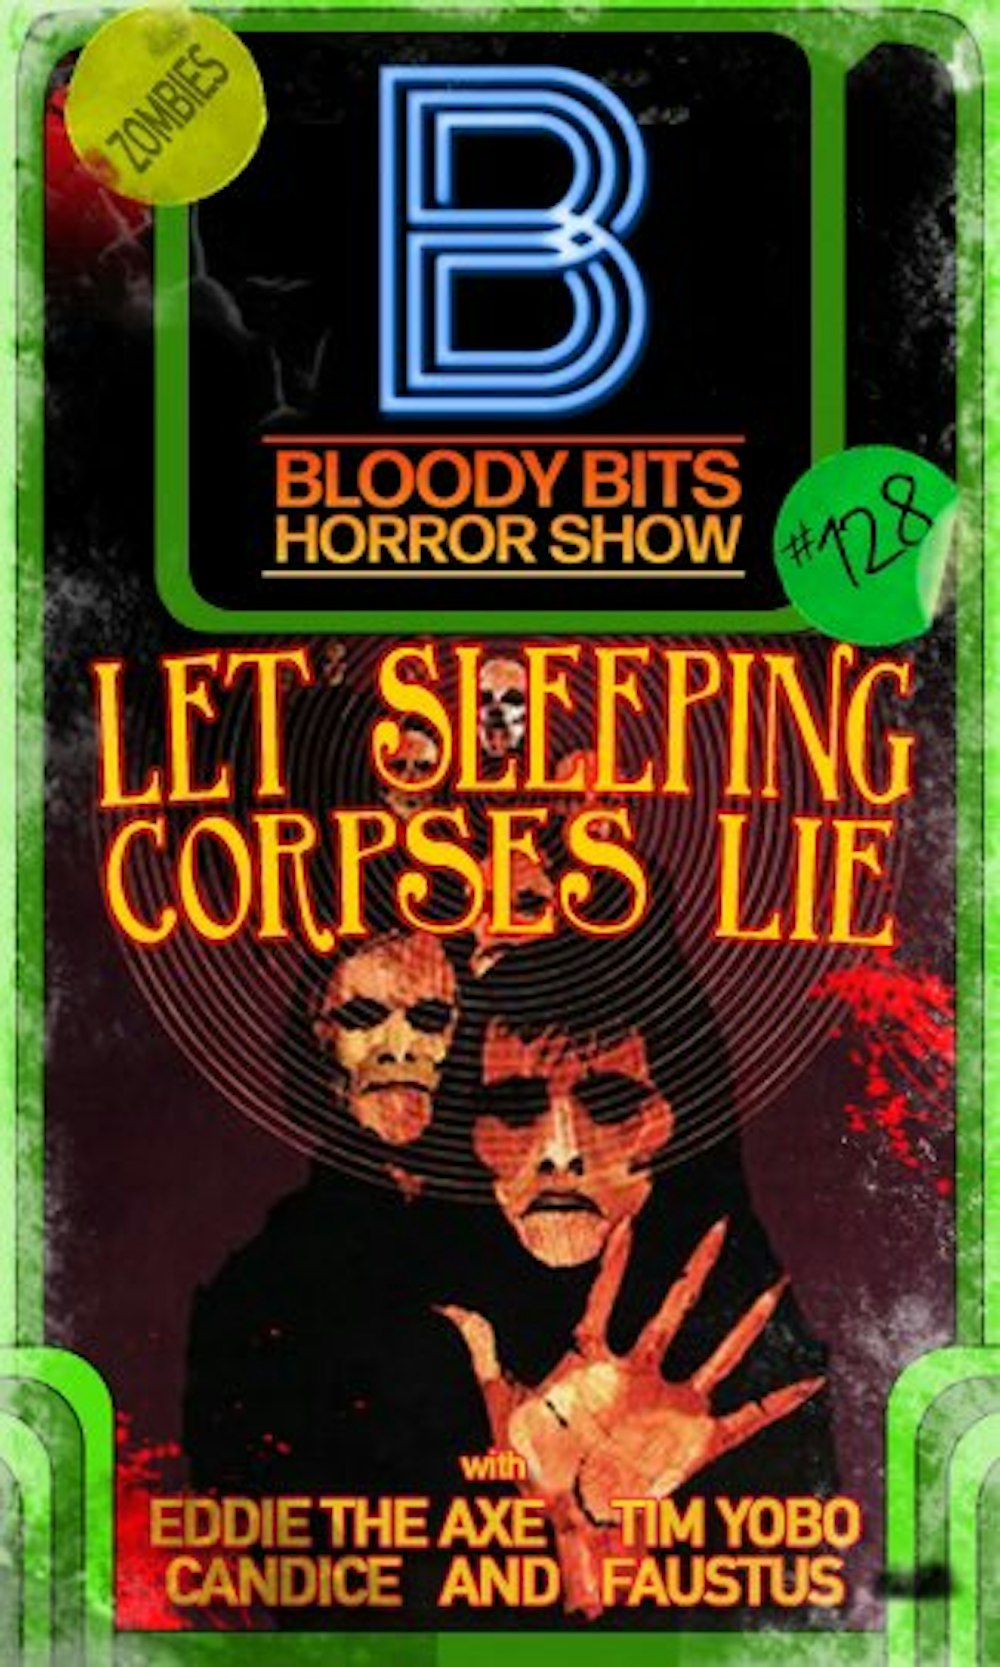 EP128 - Let sleeping corpses lie.